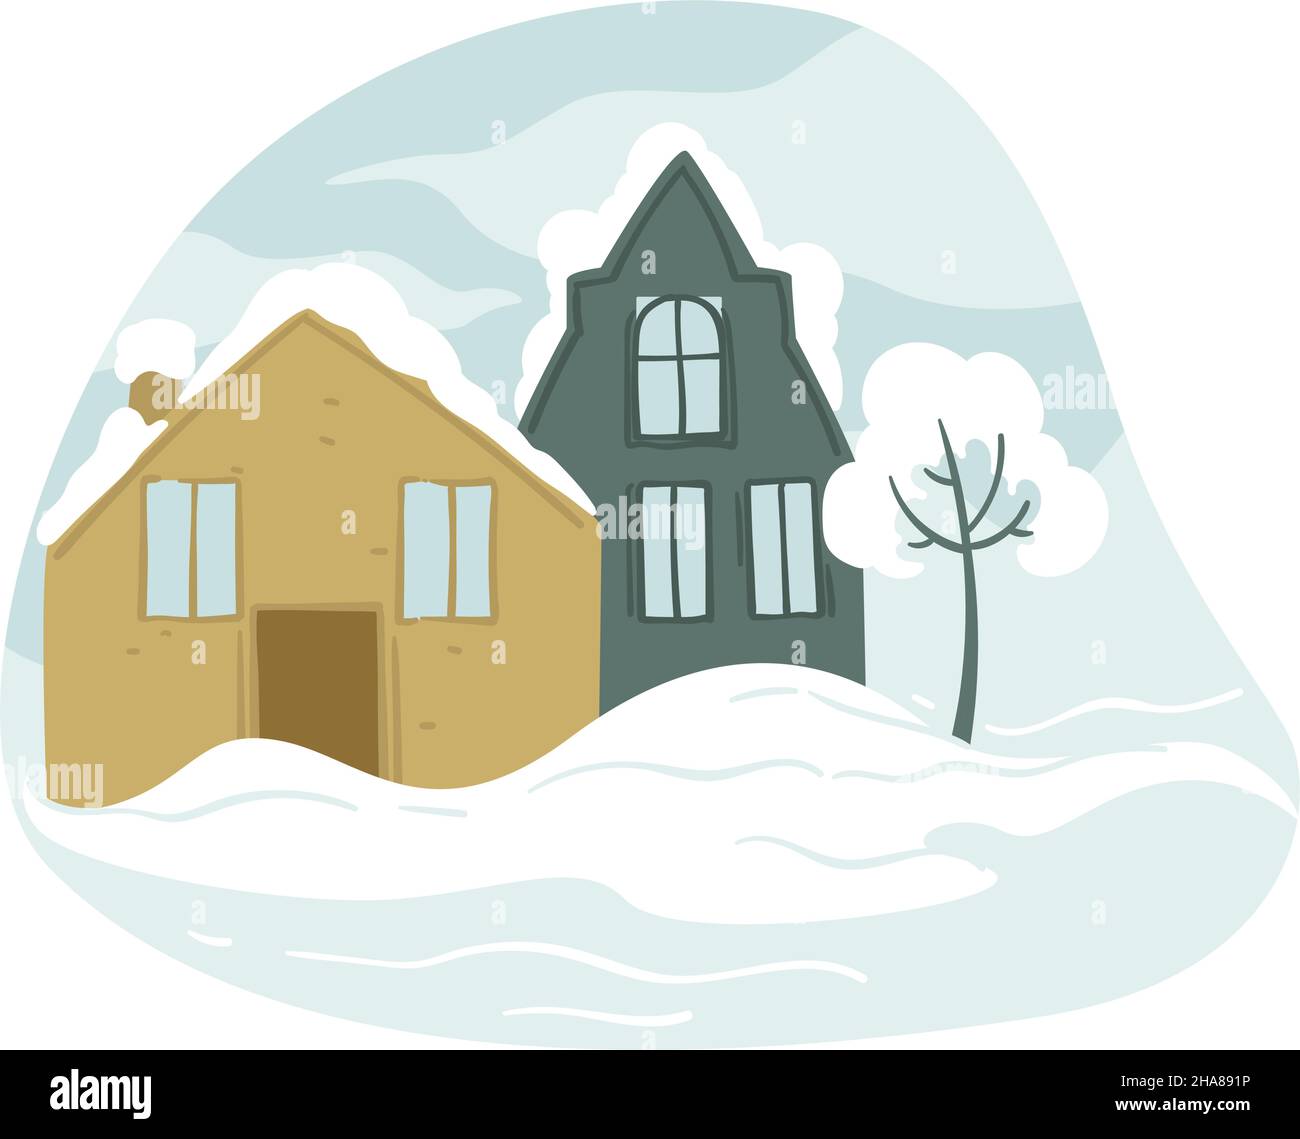 Winterlandschaft oder Stadtbild mit Gebäuden und Häusern Dächer mit Schnee bedeckt. Winterlandschaft mit Baum im Hof. Downtown-Architektur und ou Stock Vektor